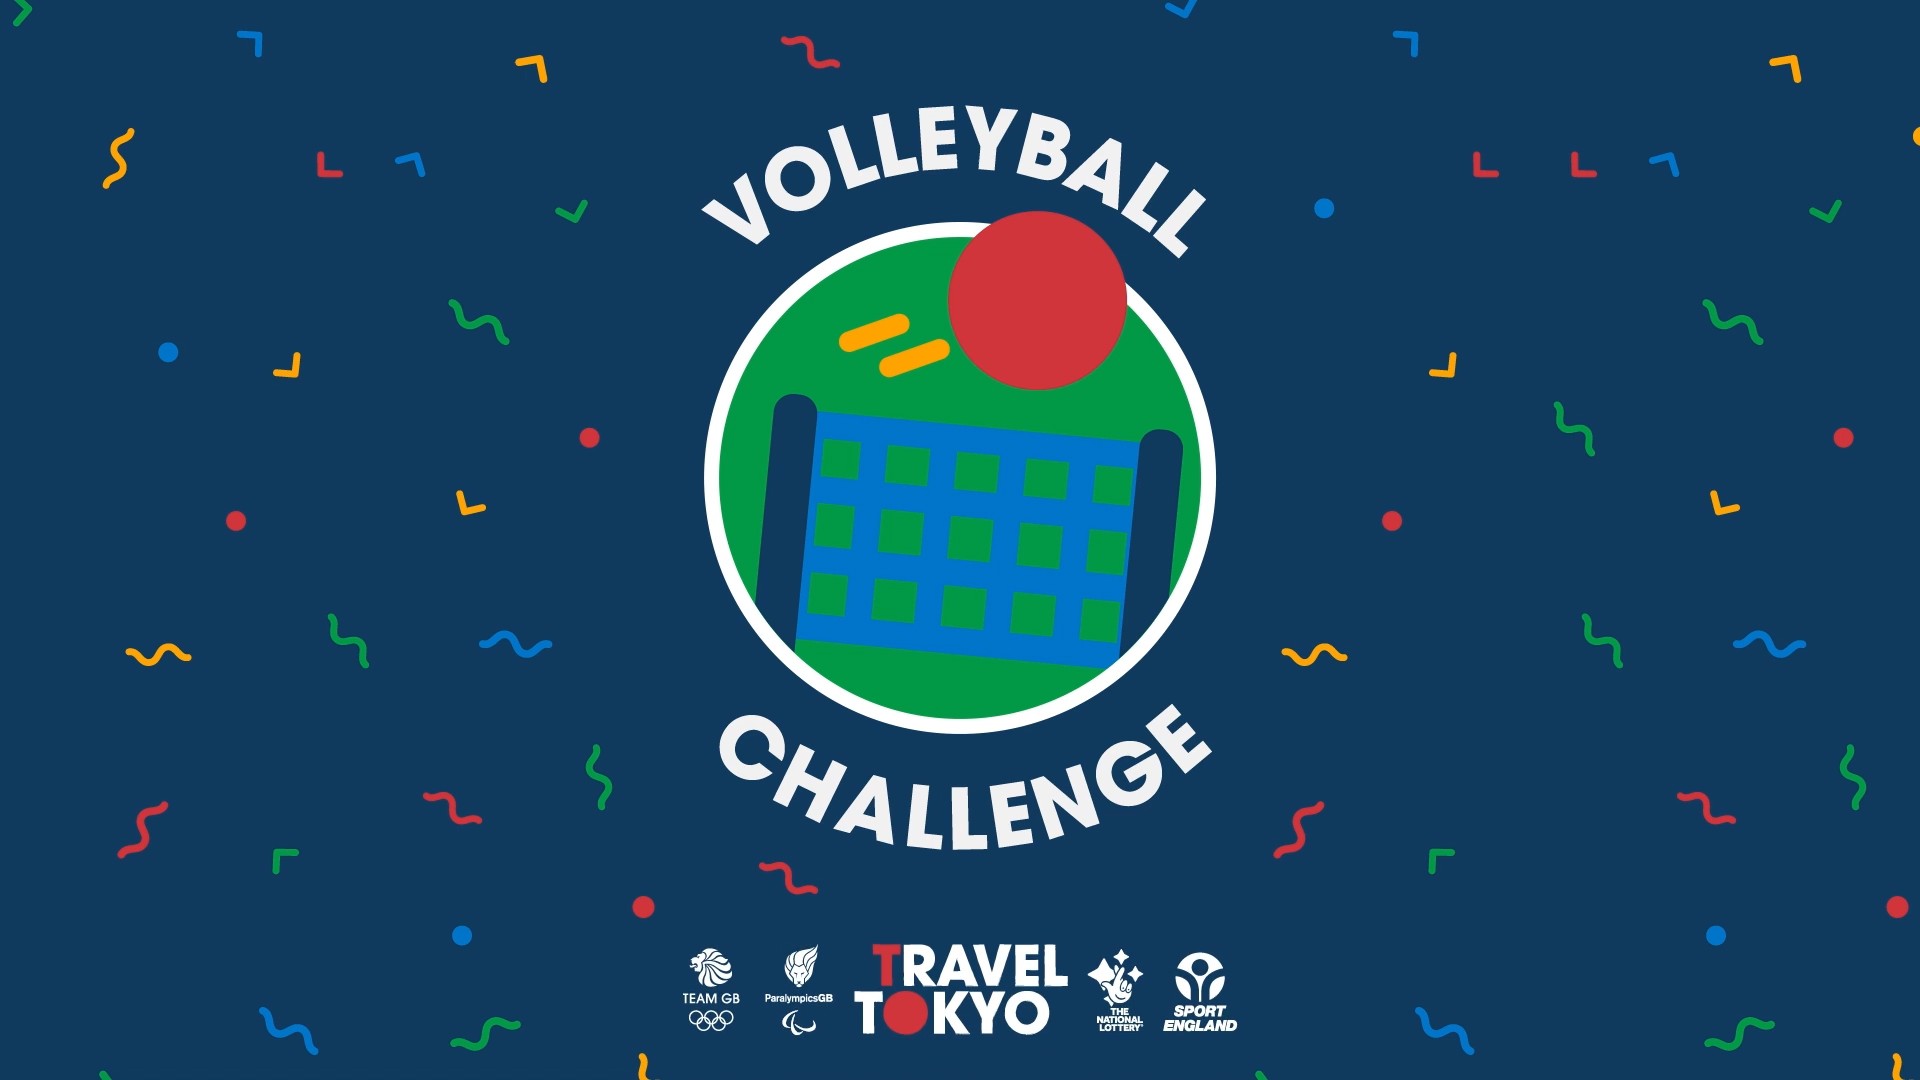 Volley2s challenge